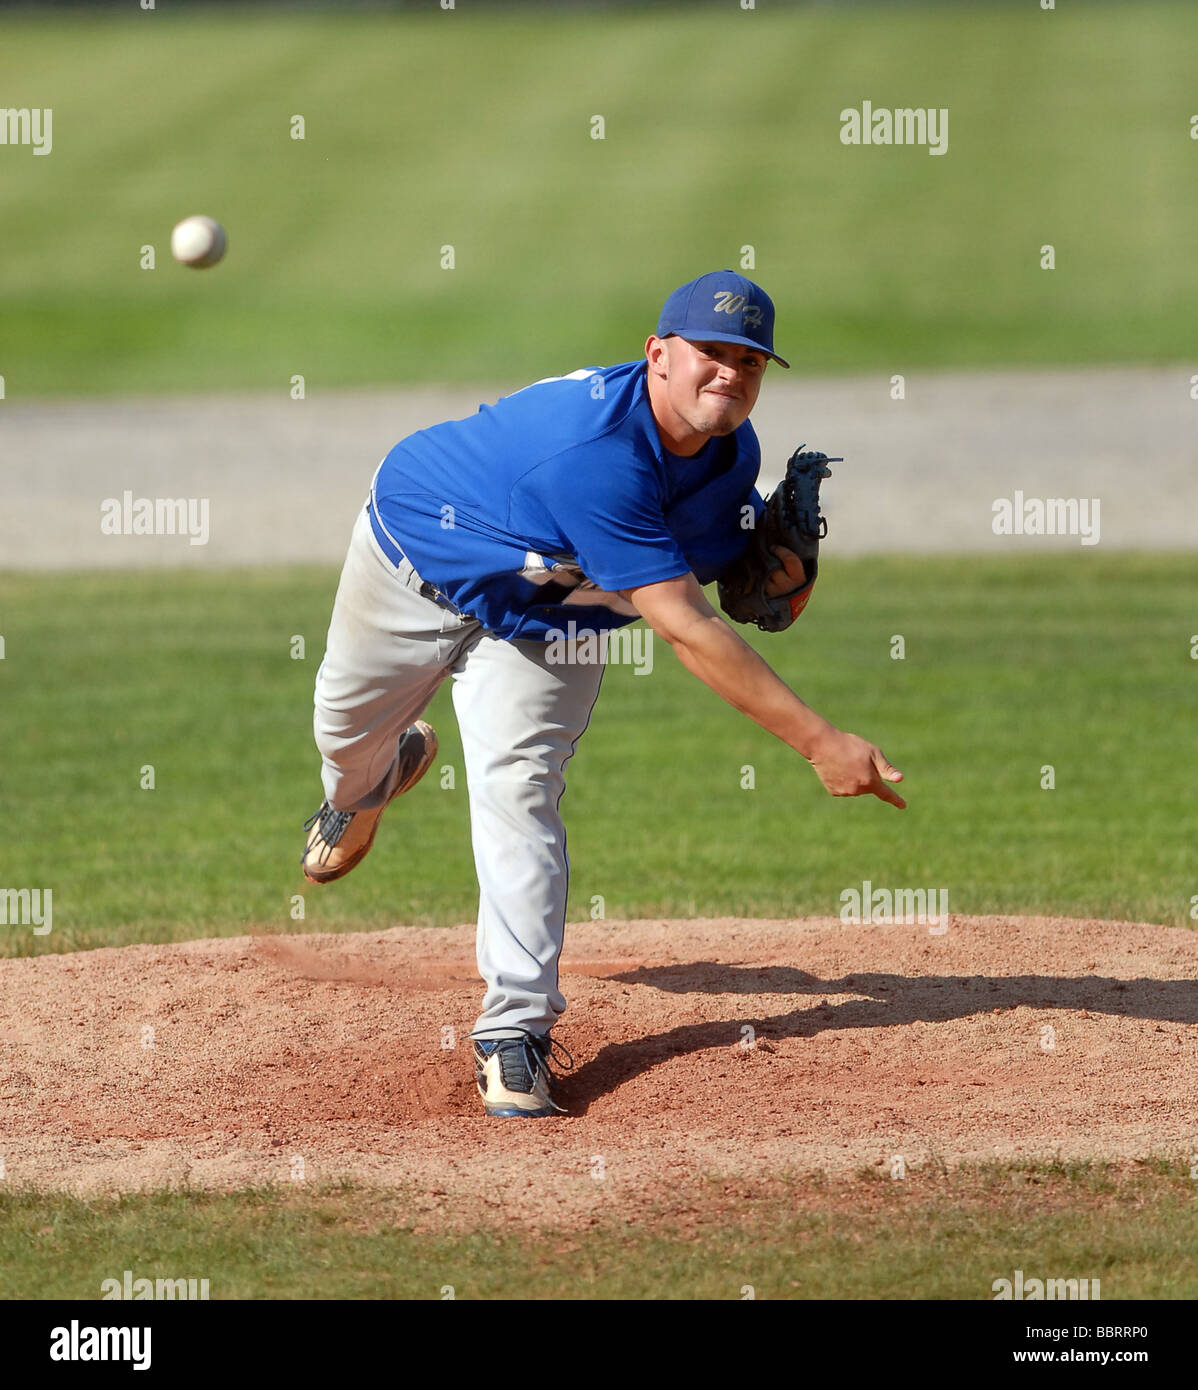 Alta scuola brocca gettando la sfera durante il campionato di baseball gioco in CT STATI UNITI D'AMERICA Foto Stock